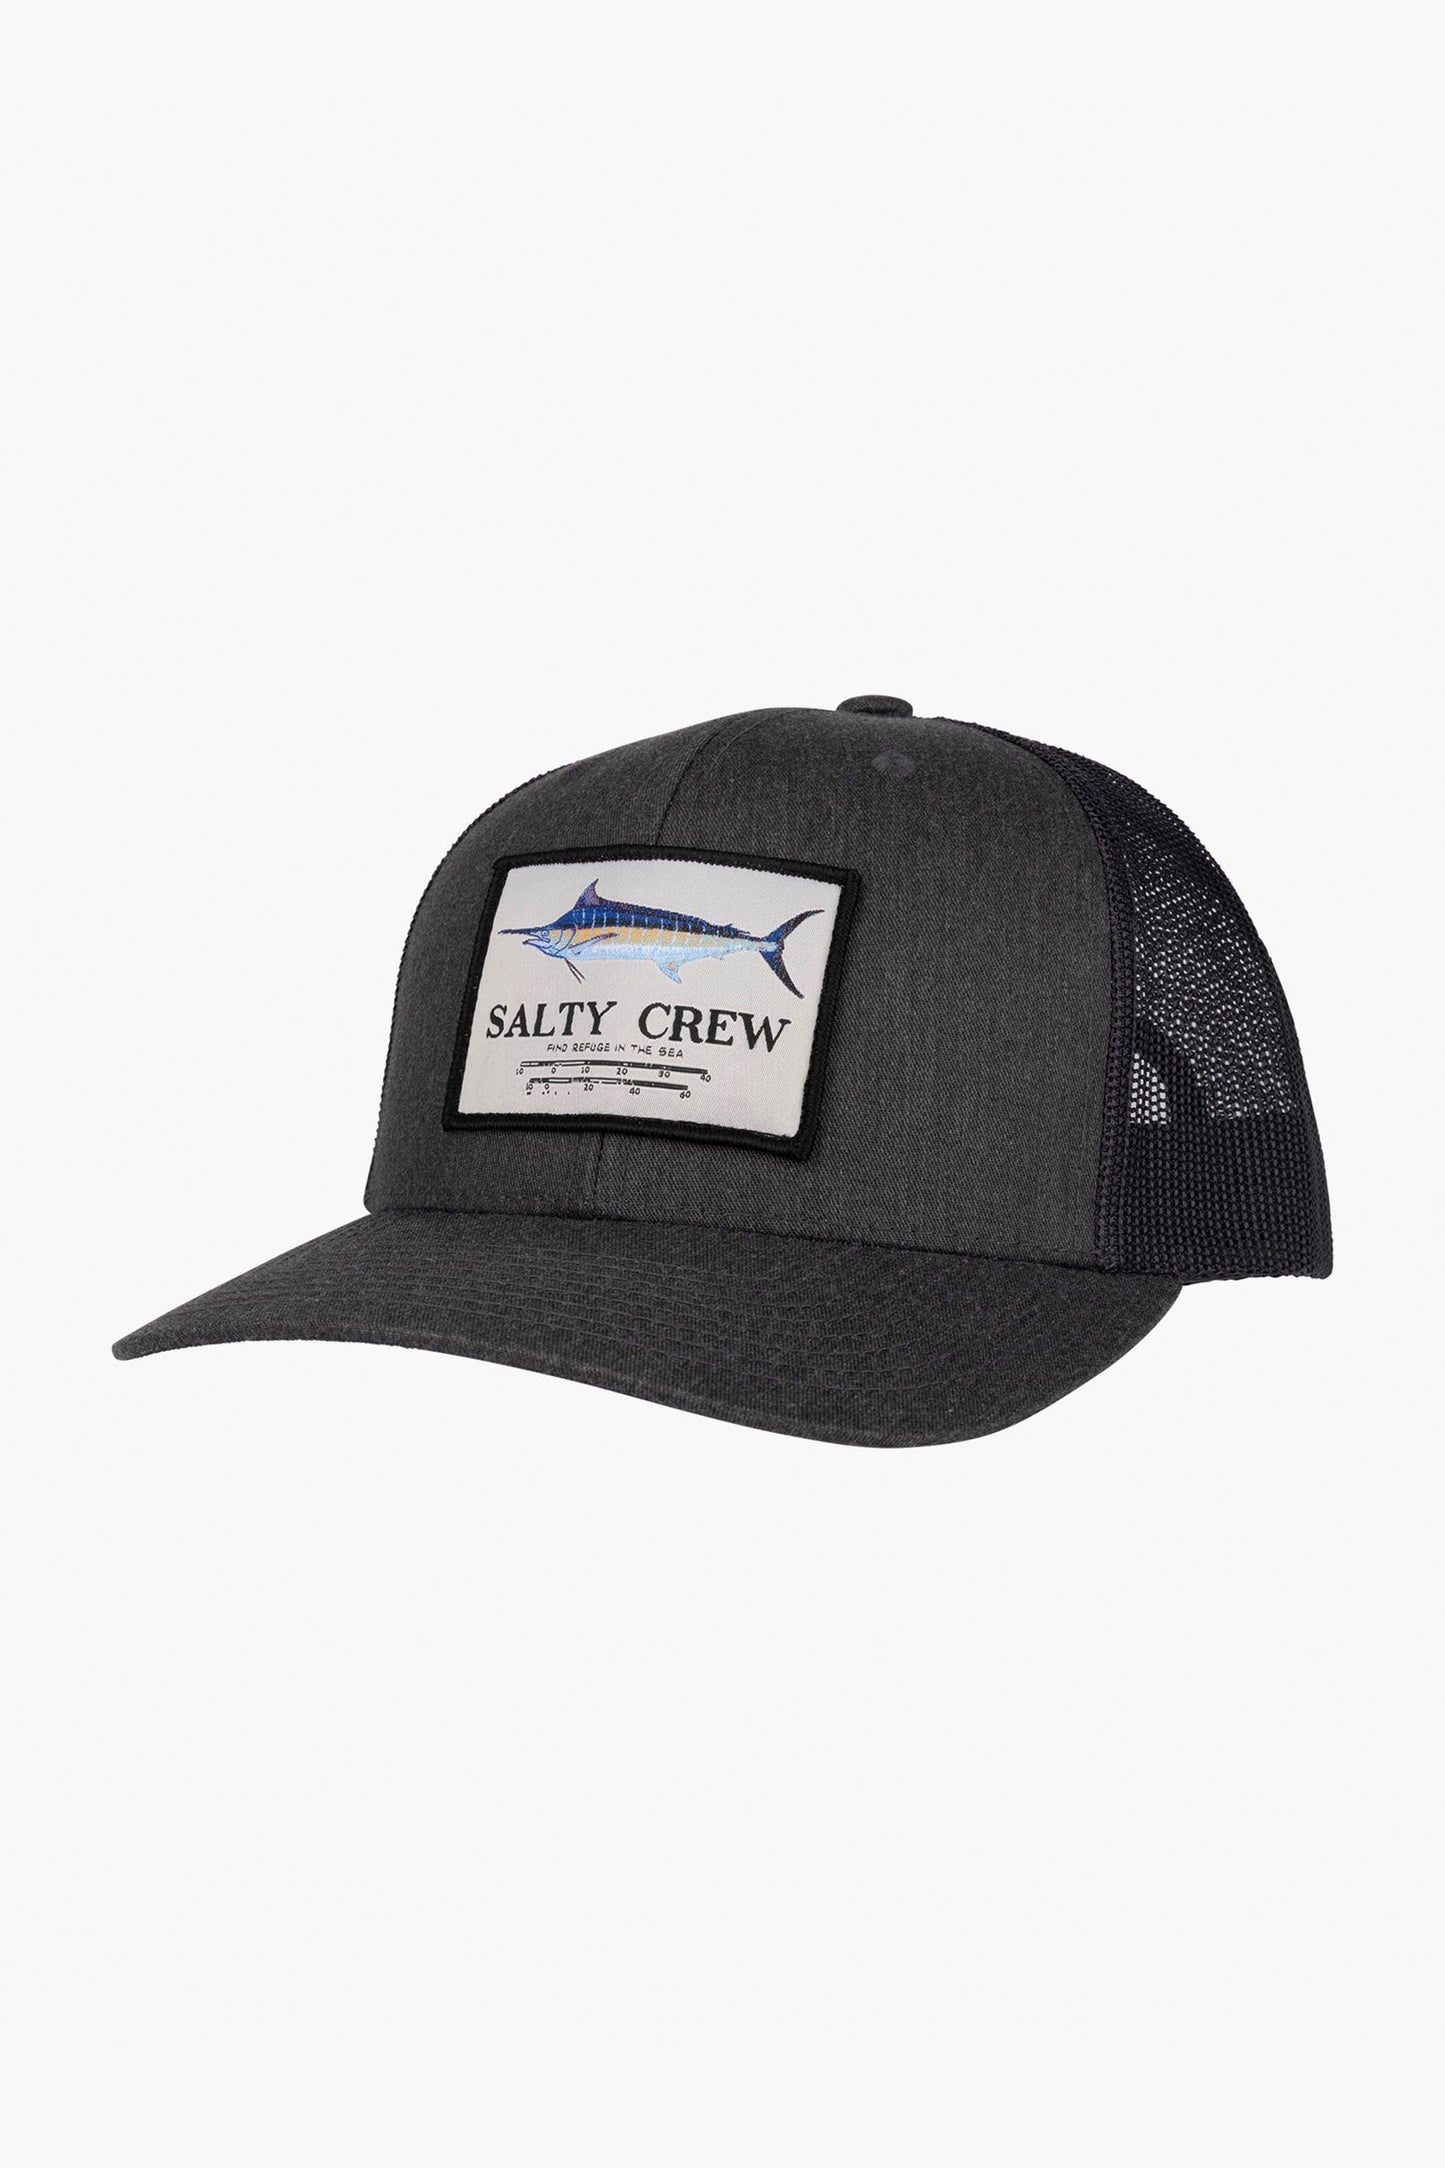 Pukas-Surf-Shop-Salty-Crew-Hat-marlin-mount-retro-grey-black